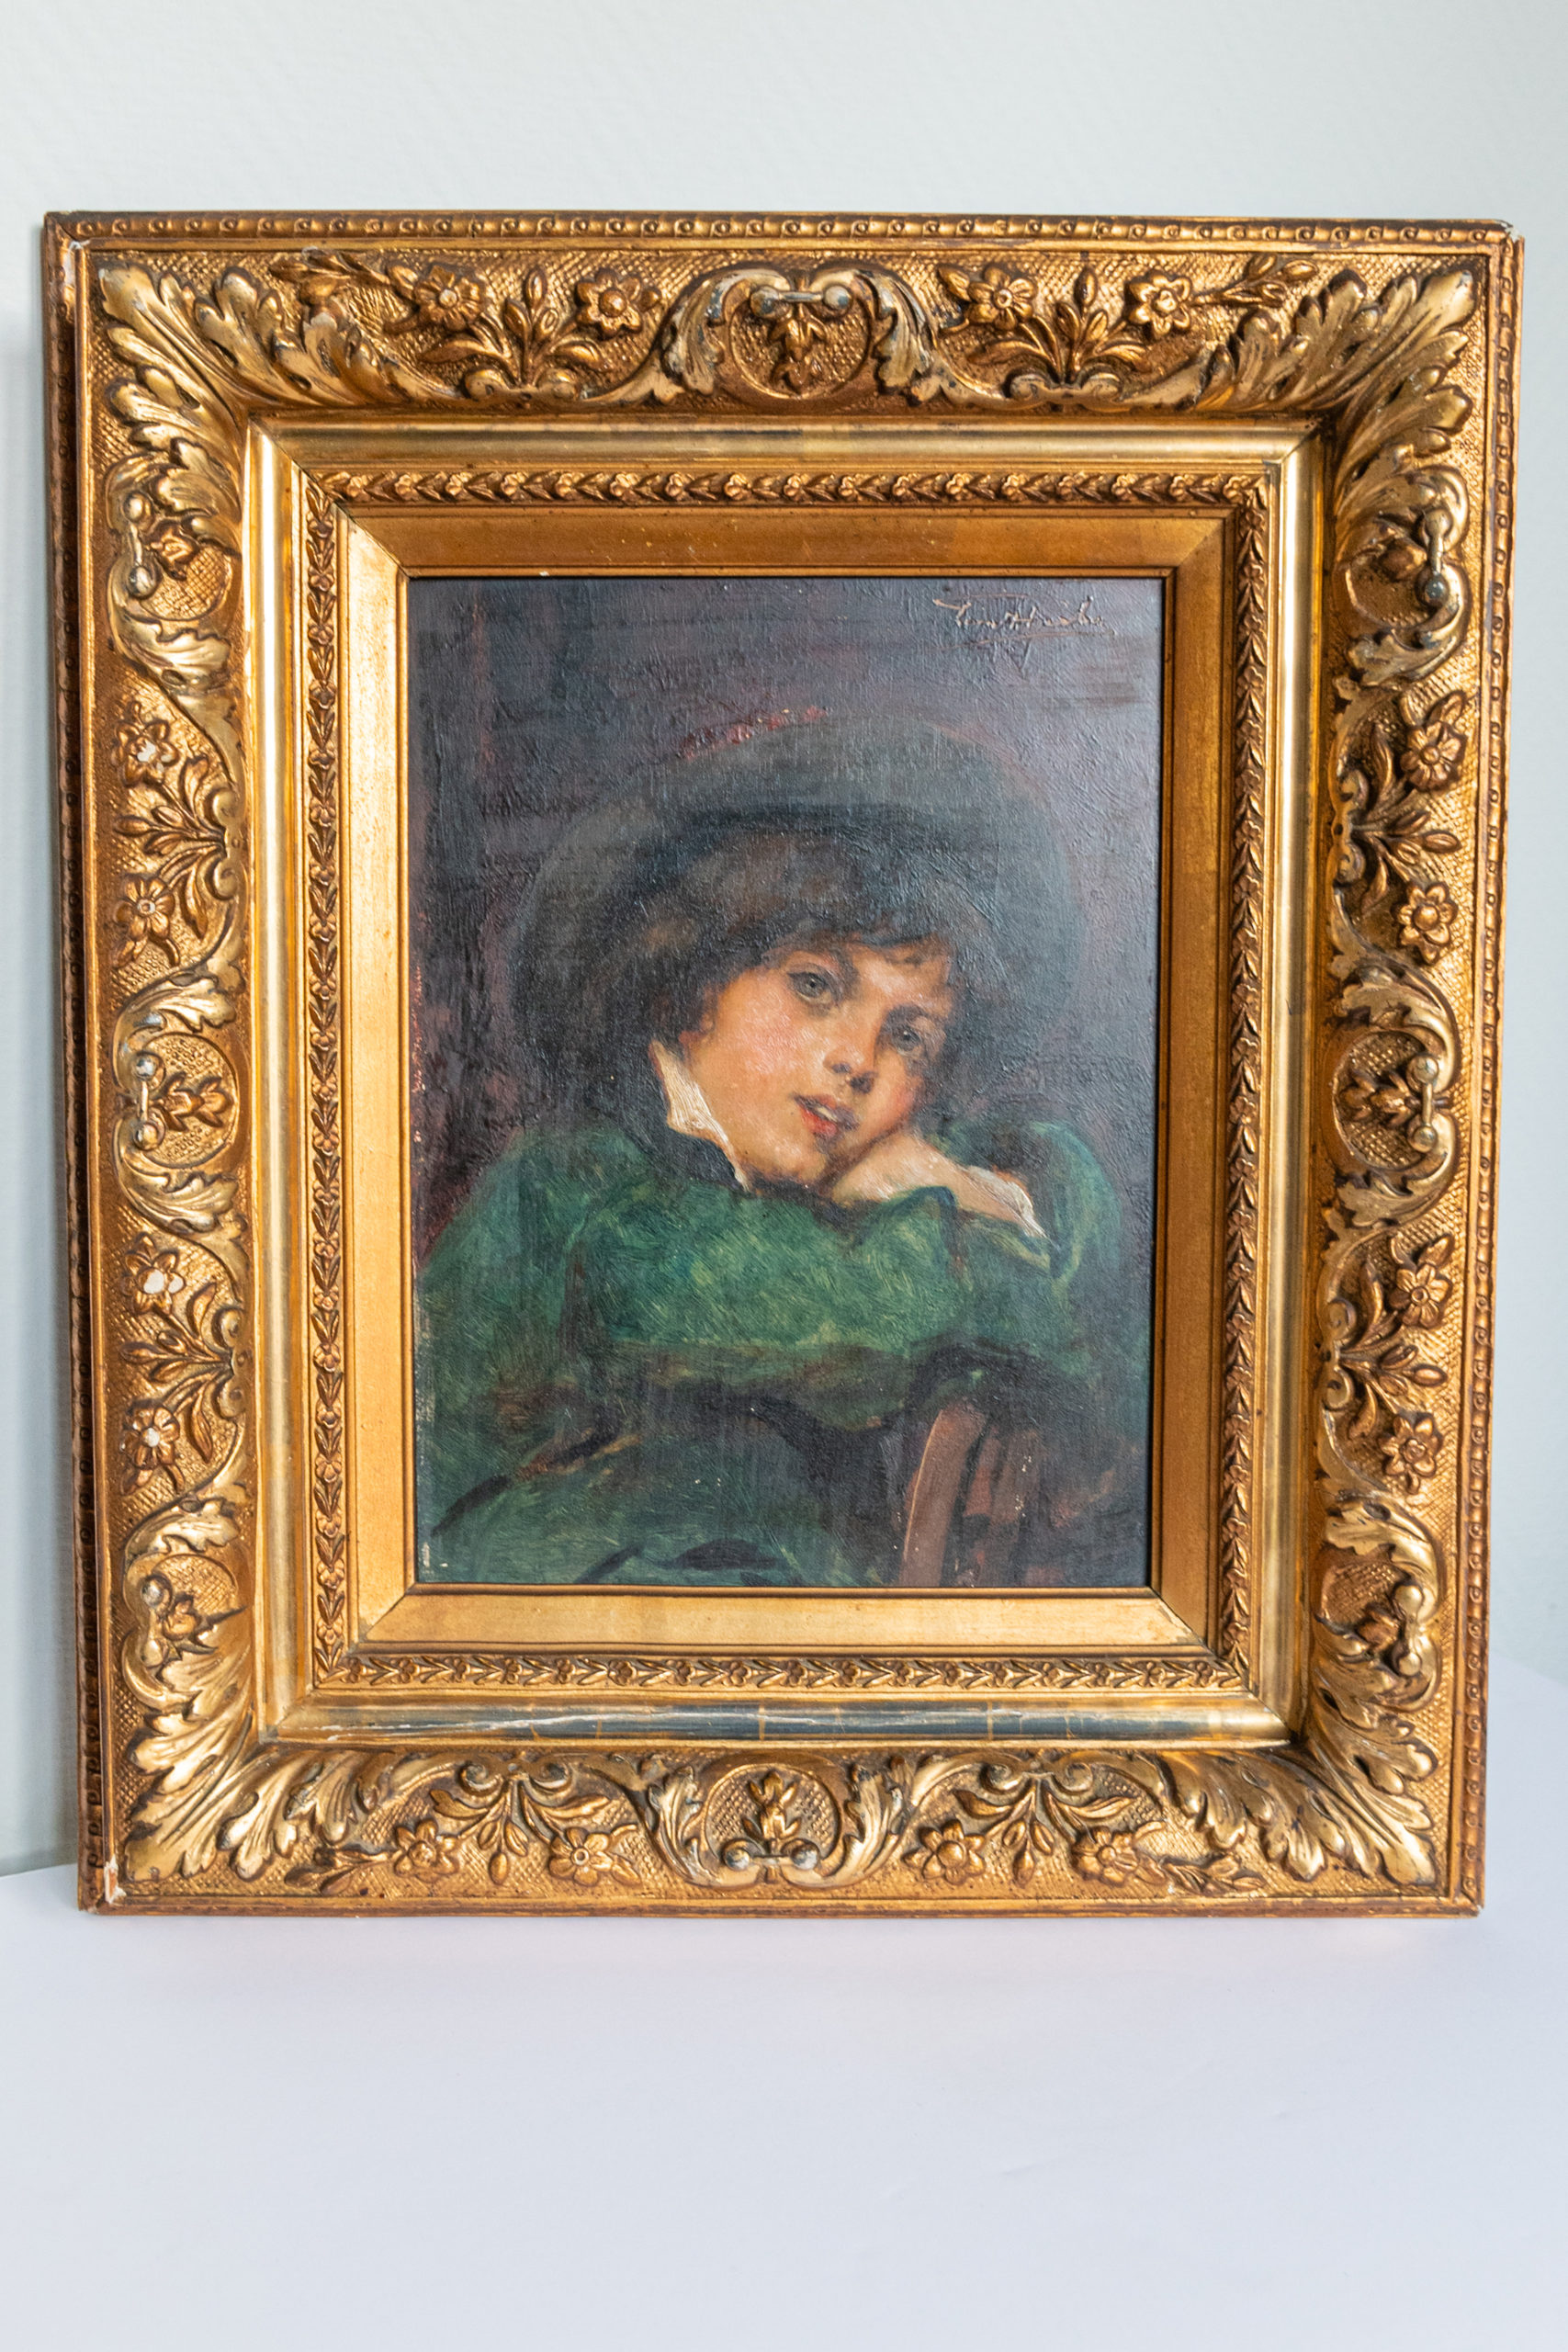 Leon-herbo-peinture-XIXe-jeune-garcon-portrait-panneau-aurore-morisse-antiquaire-marchand-art-expertise-liège-affaire-conclue1